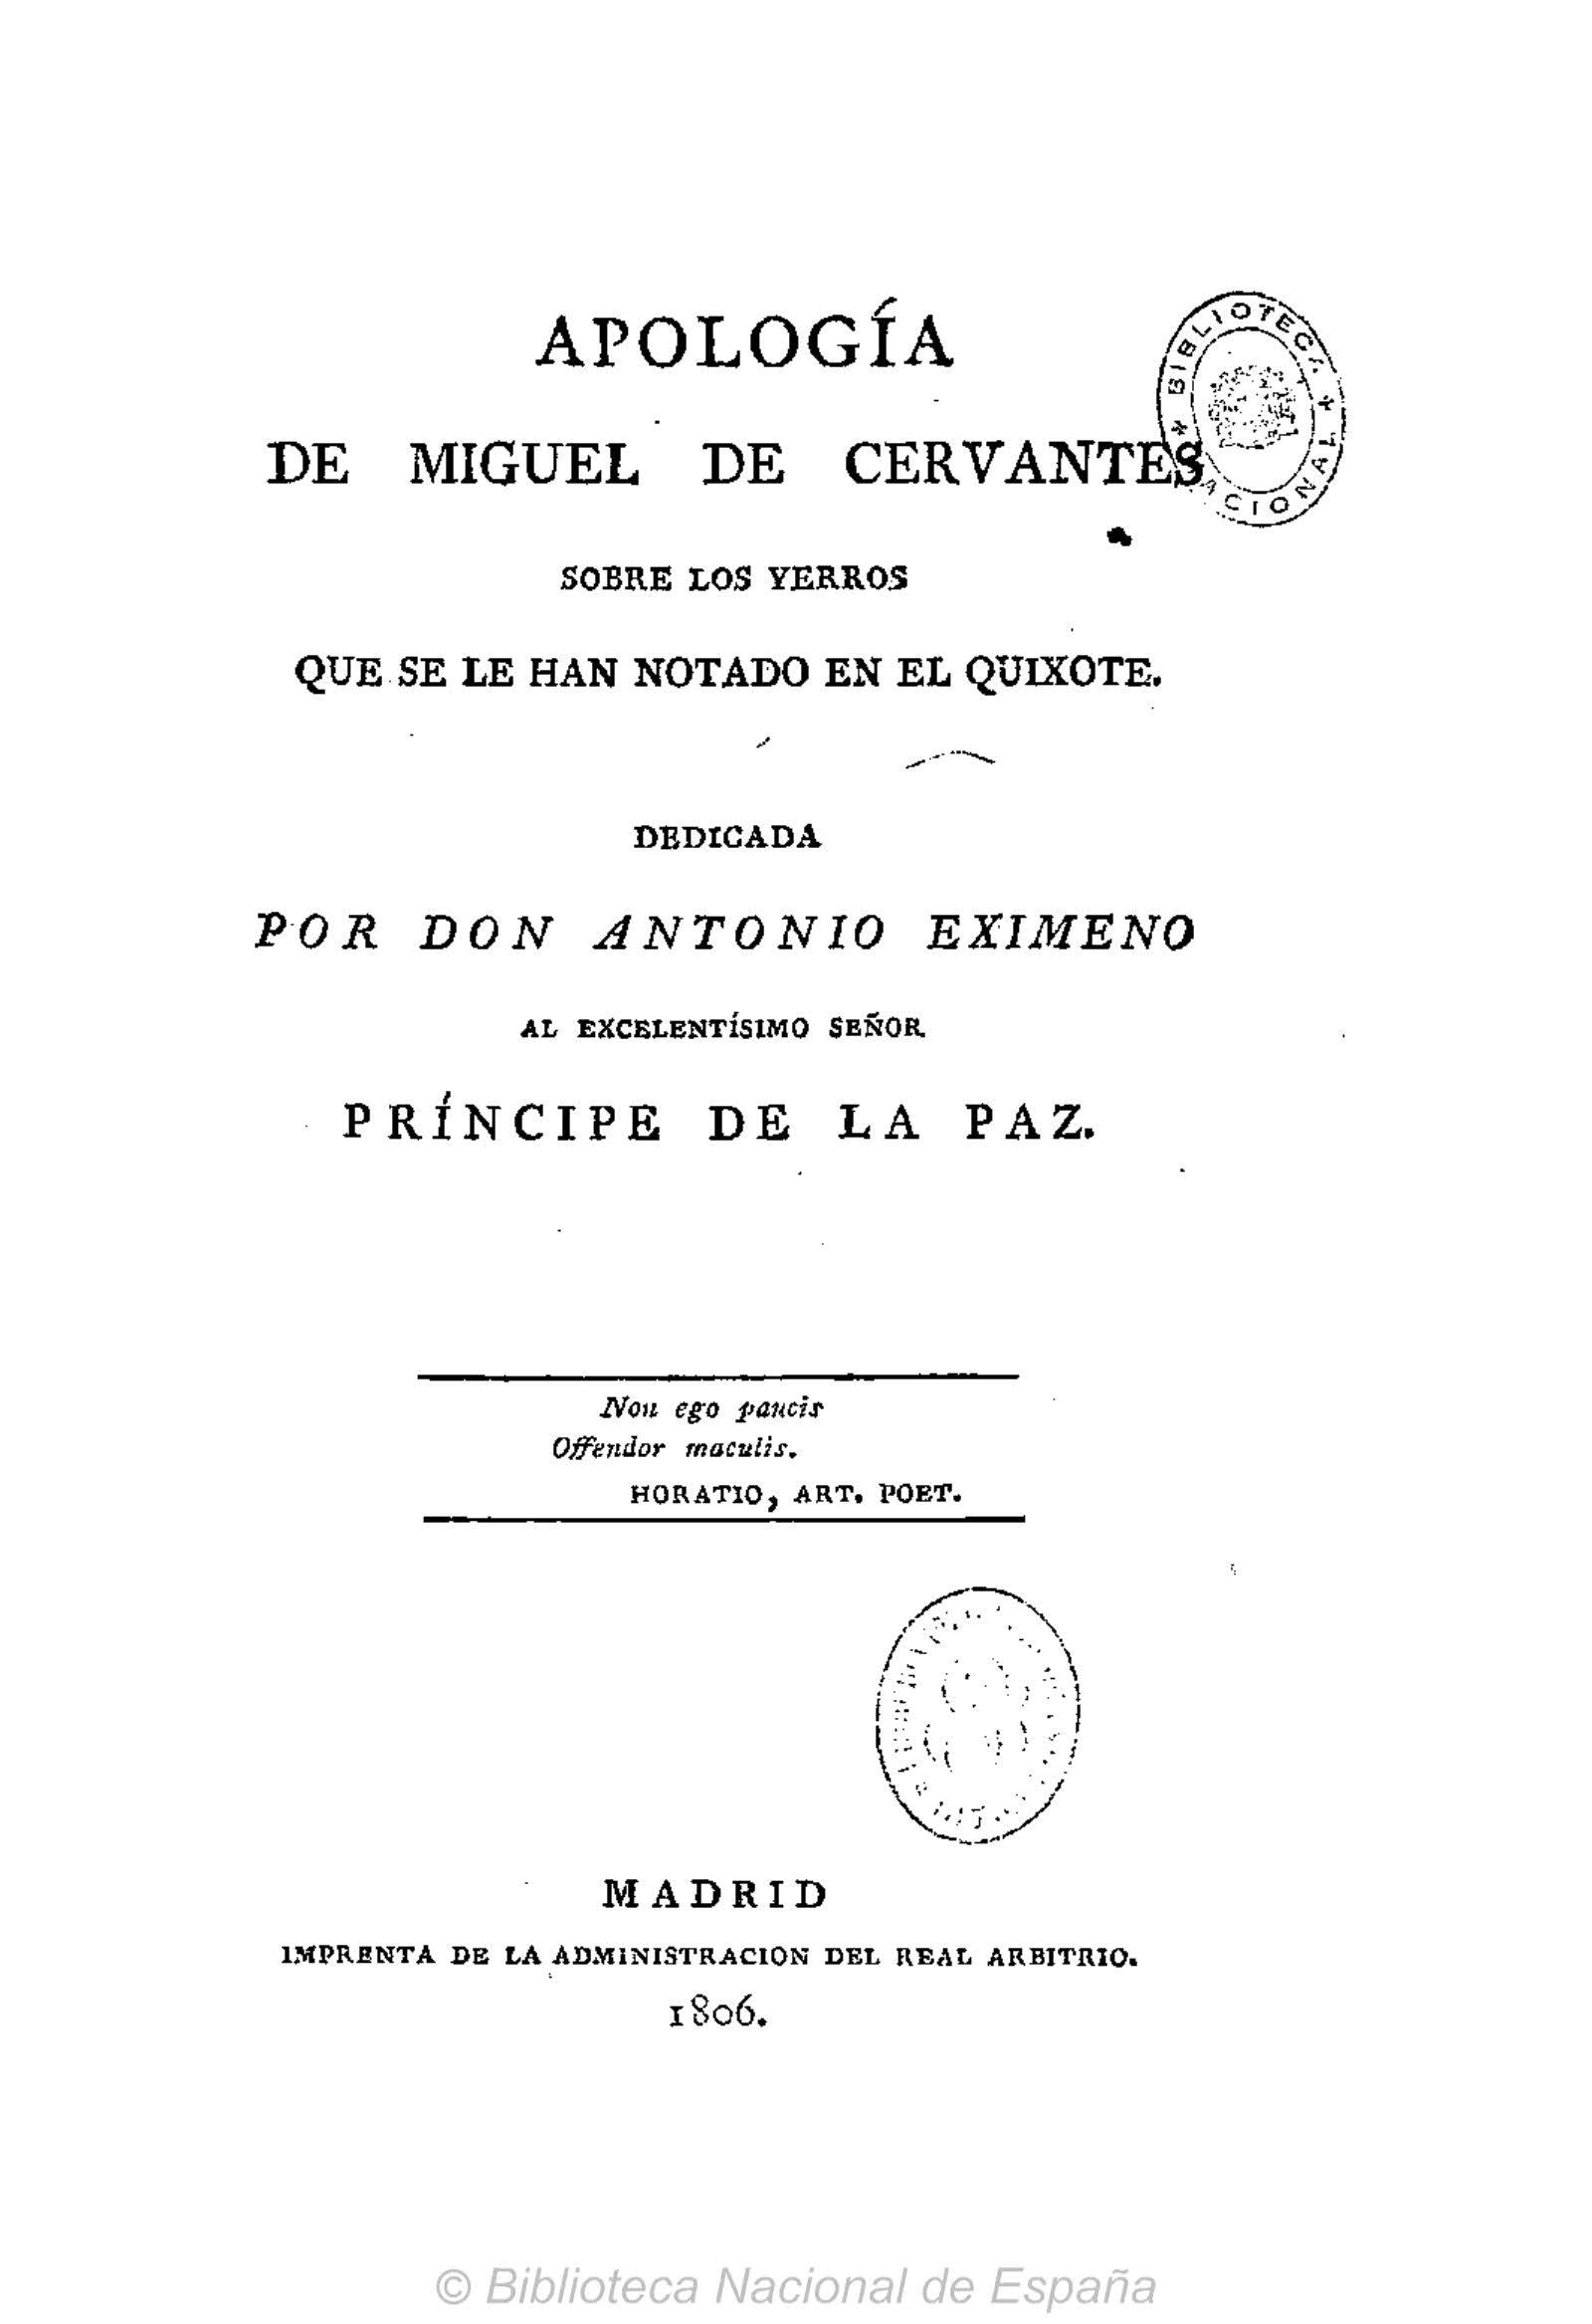 Apología de Miguel de Cervantes sobre los yerros que se le han notado en el Quixote